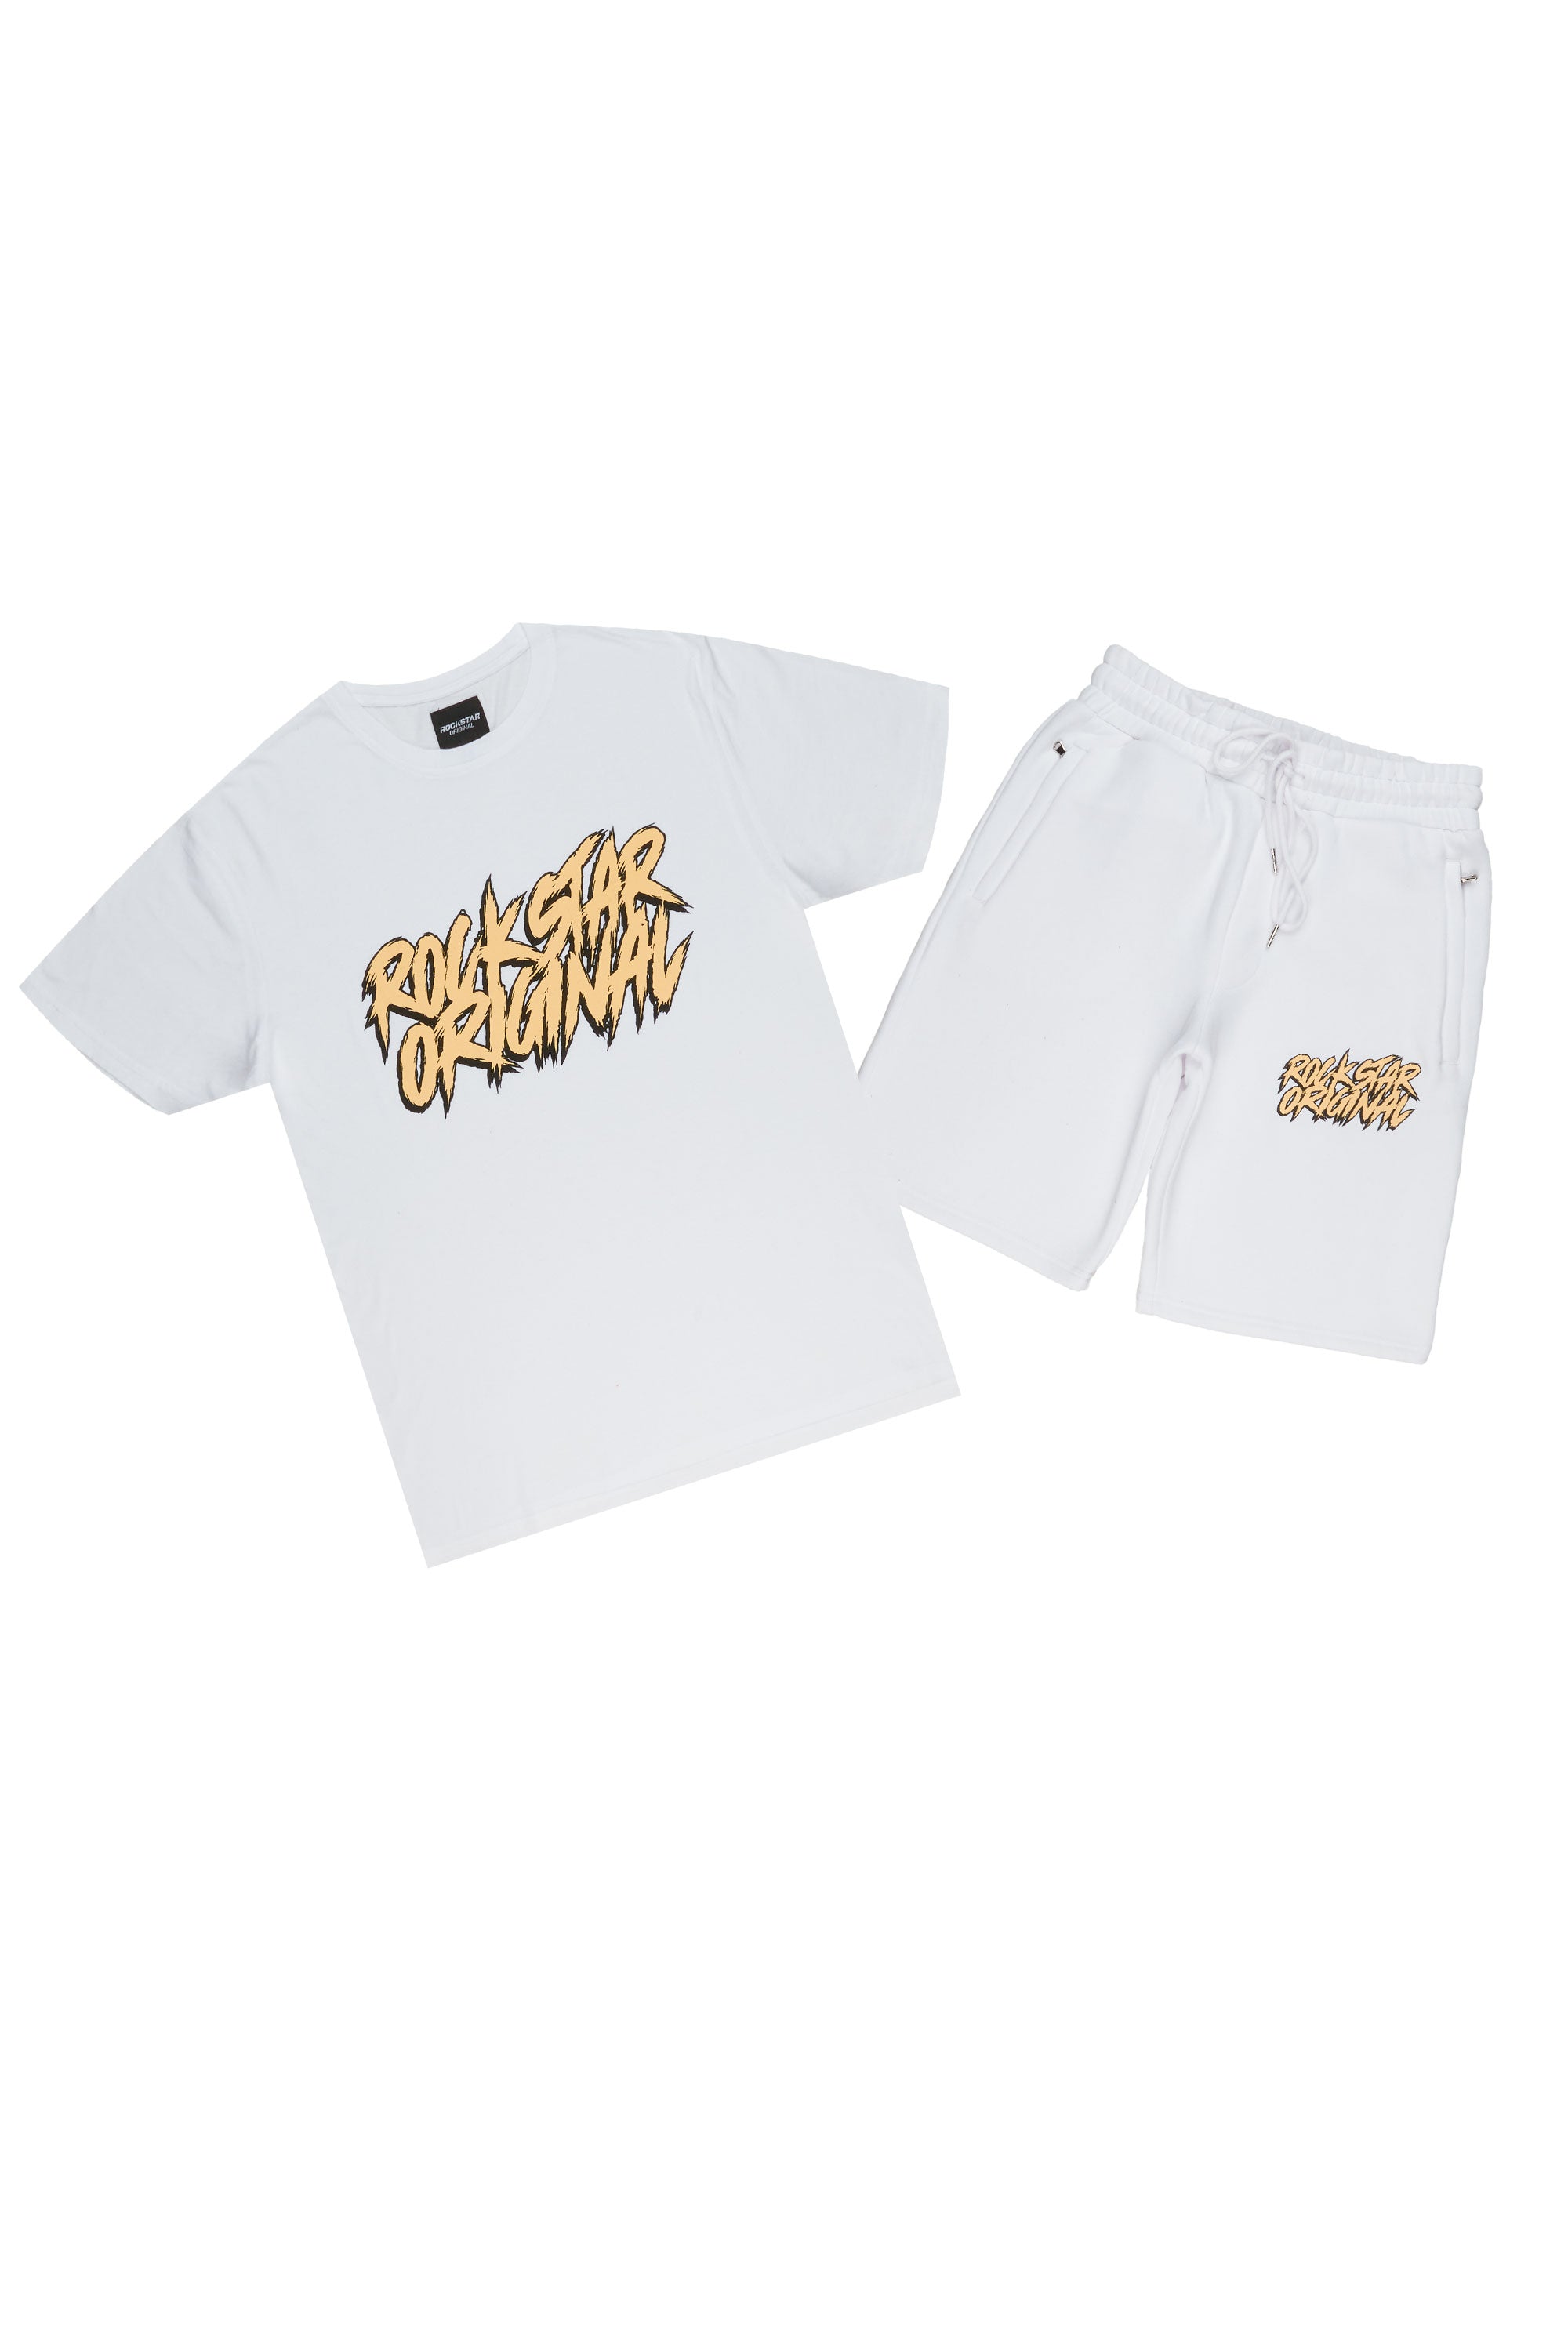 Zustrand White T-Shirt Short Set